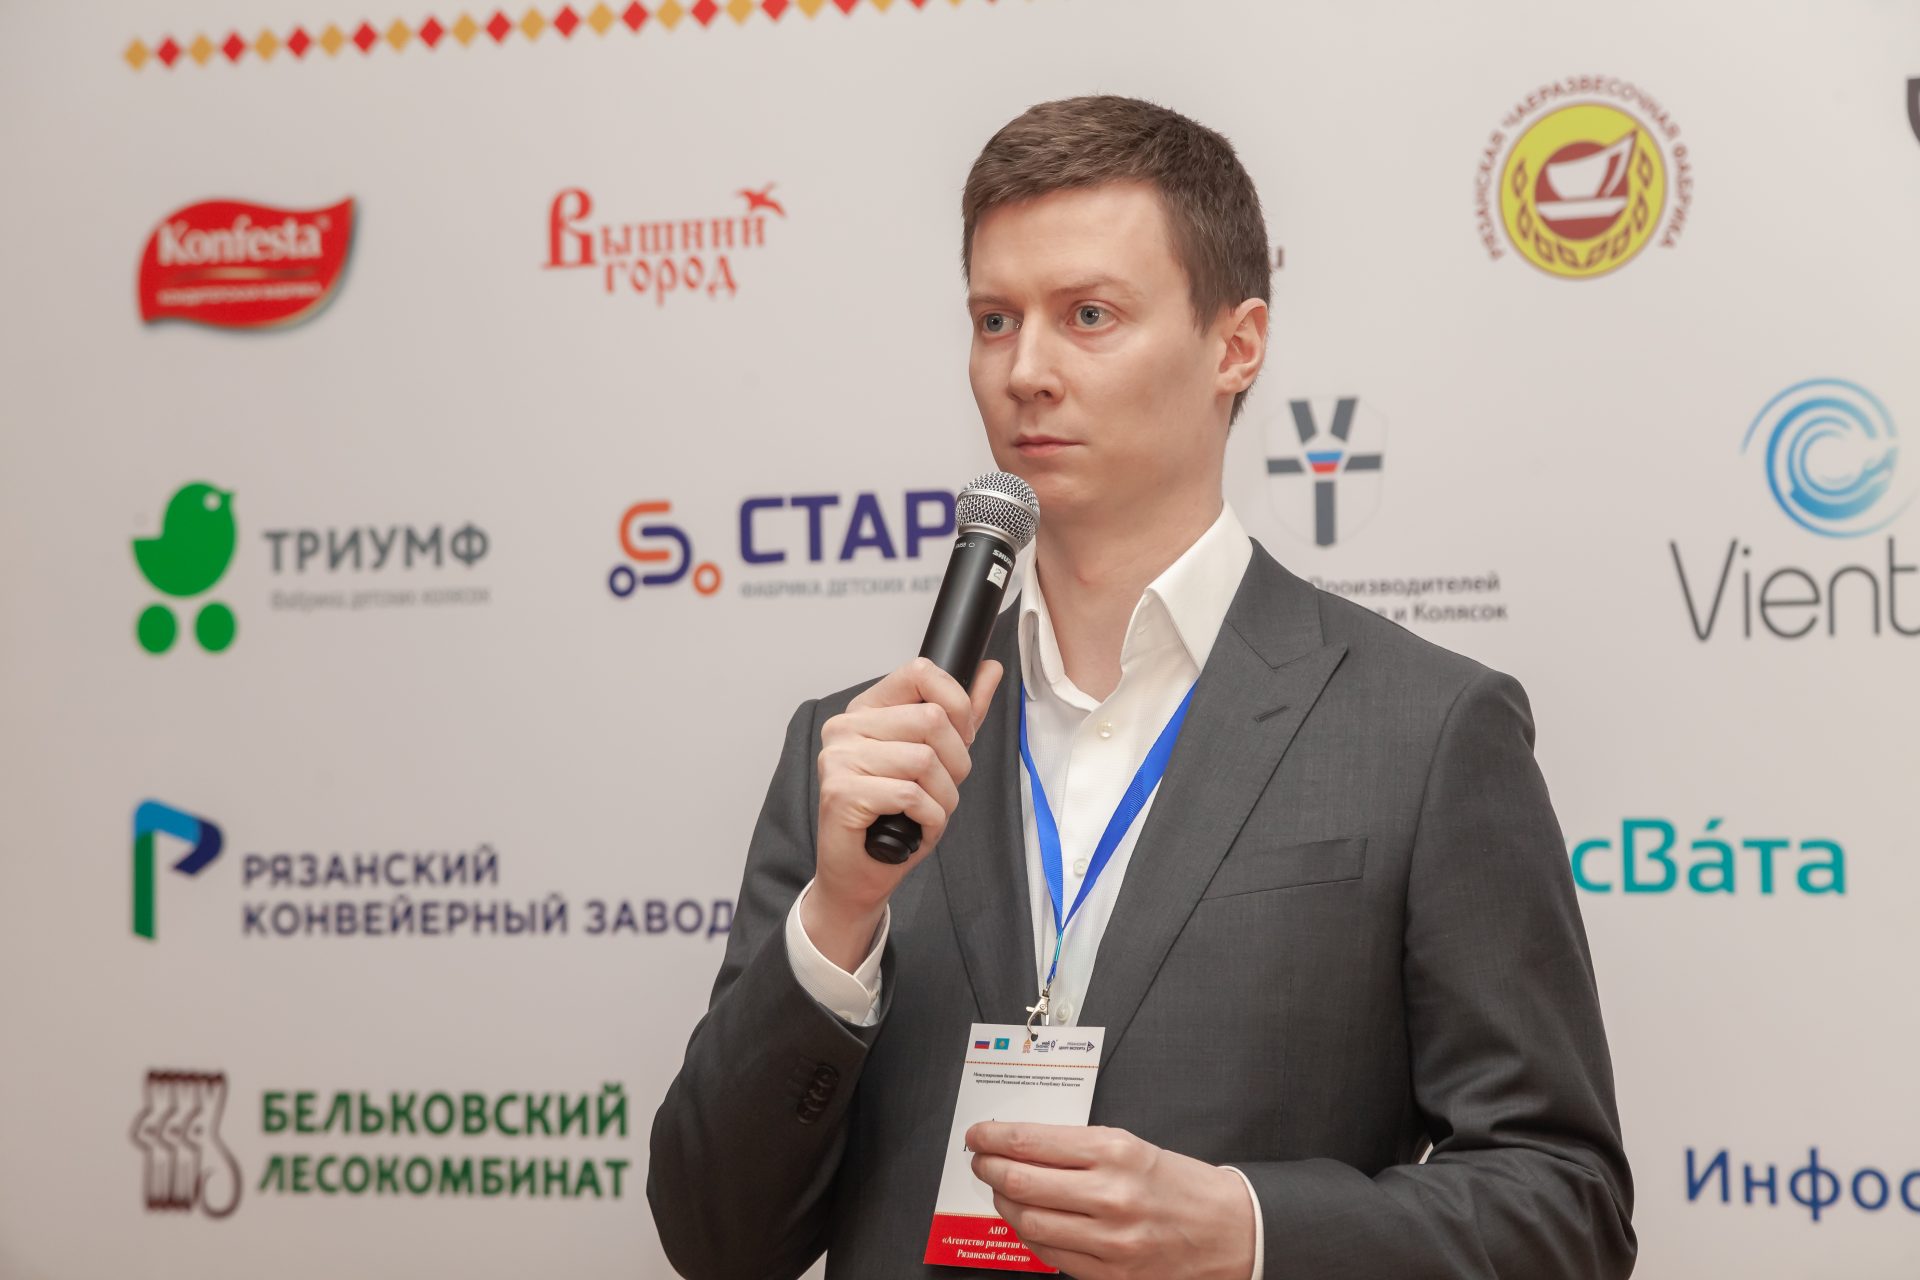 Александр Уланов: Наша задача - эффективно расходовать каждый бюджетный рубль на помощь бизнесу, чтобы получать наибольшую отдачу